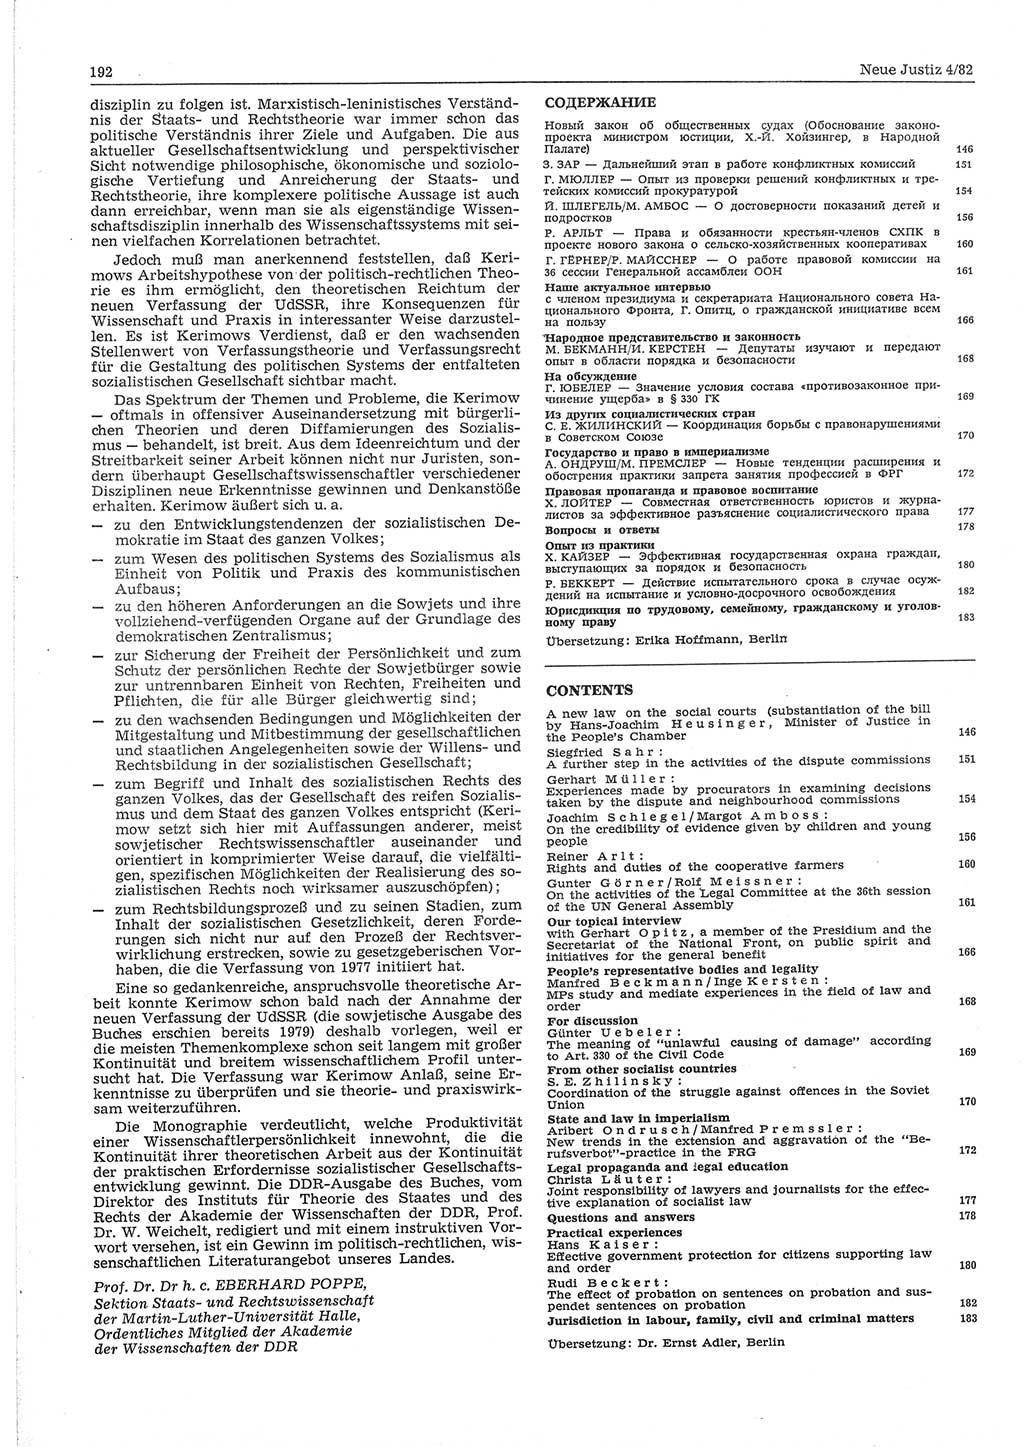 Neue Justiz (NJ), Zeitschrift für sozialistisches Recht und Gesetzlichkeit [Deutsche Demokratische Republik (DDR)], 36. Jahrgang 1982, Seite 192 (NJ DDR 1982, S. 192)